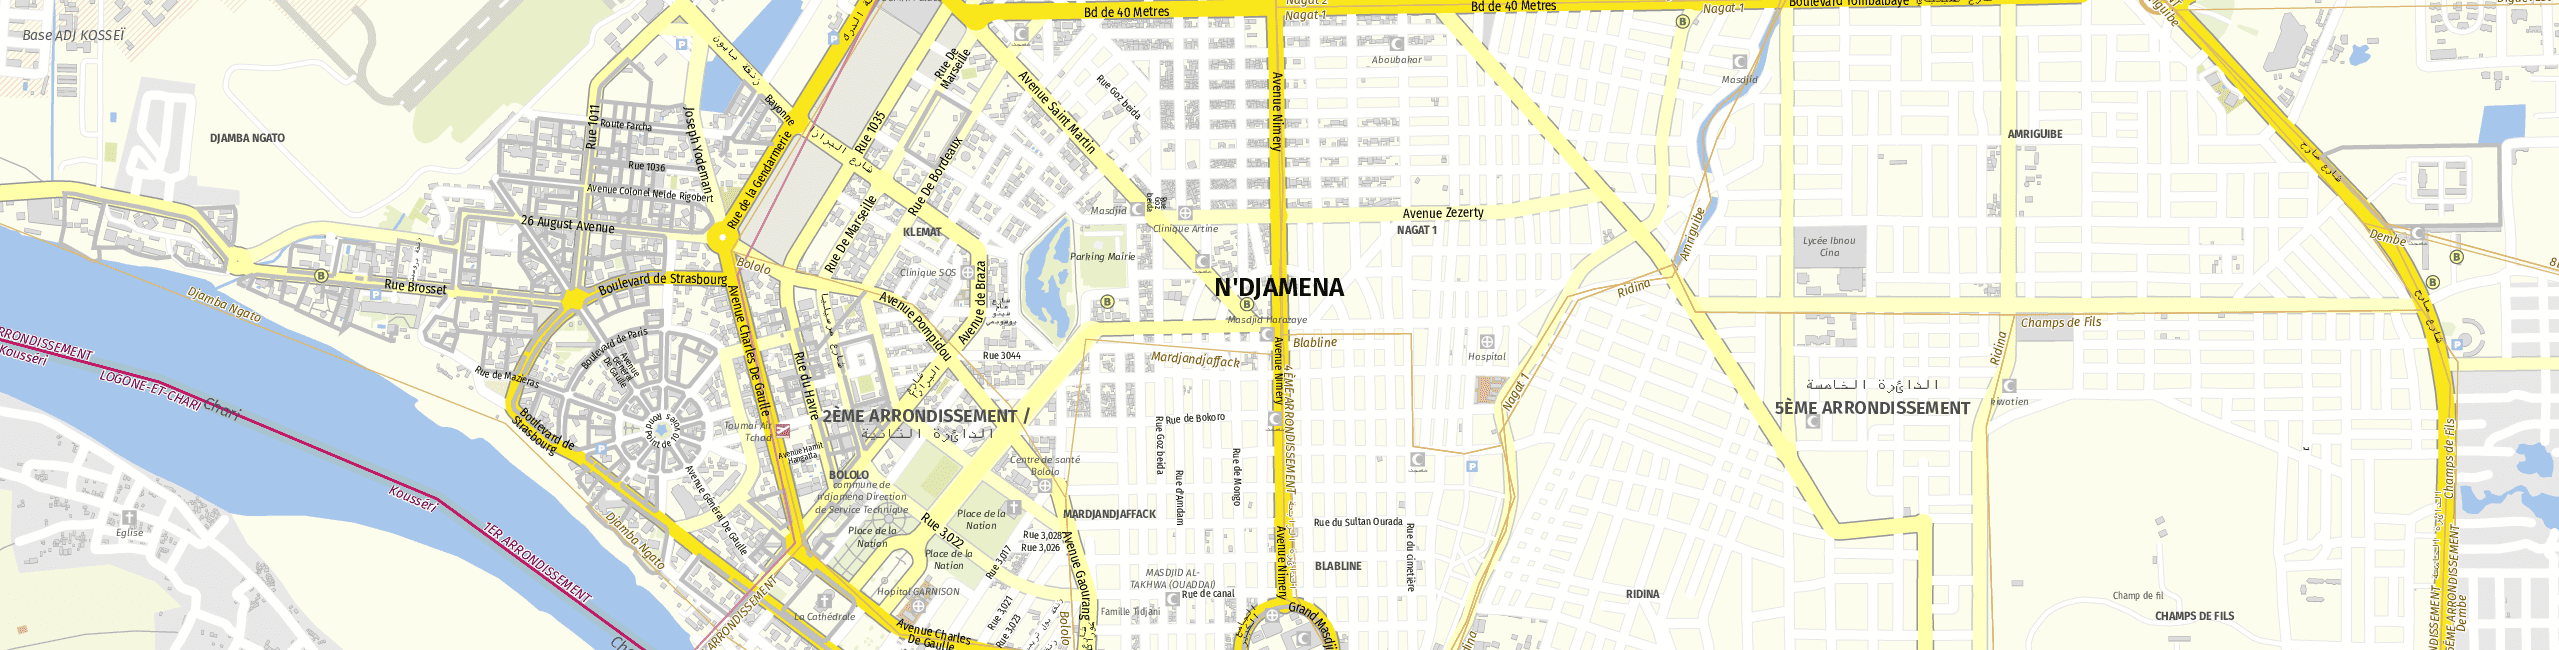 Stadtplan Ndjamena zum Downloaden.